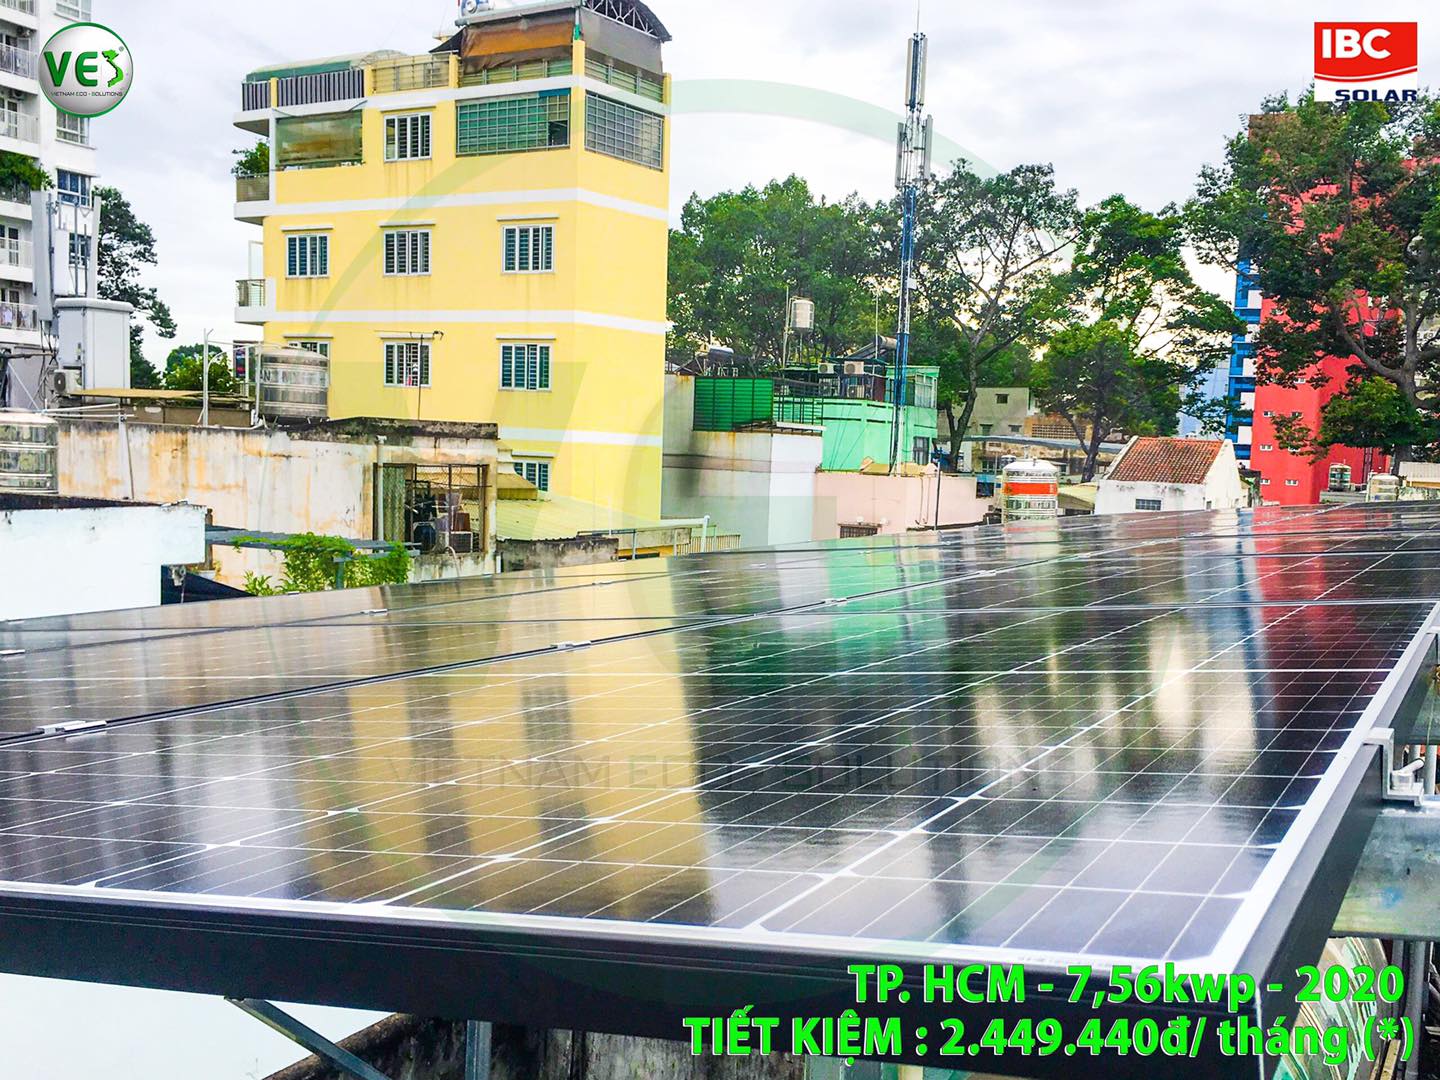 VES lắp điện năng lượng mặt trời cho khách hàng